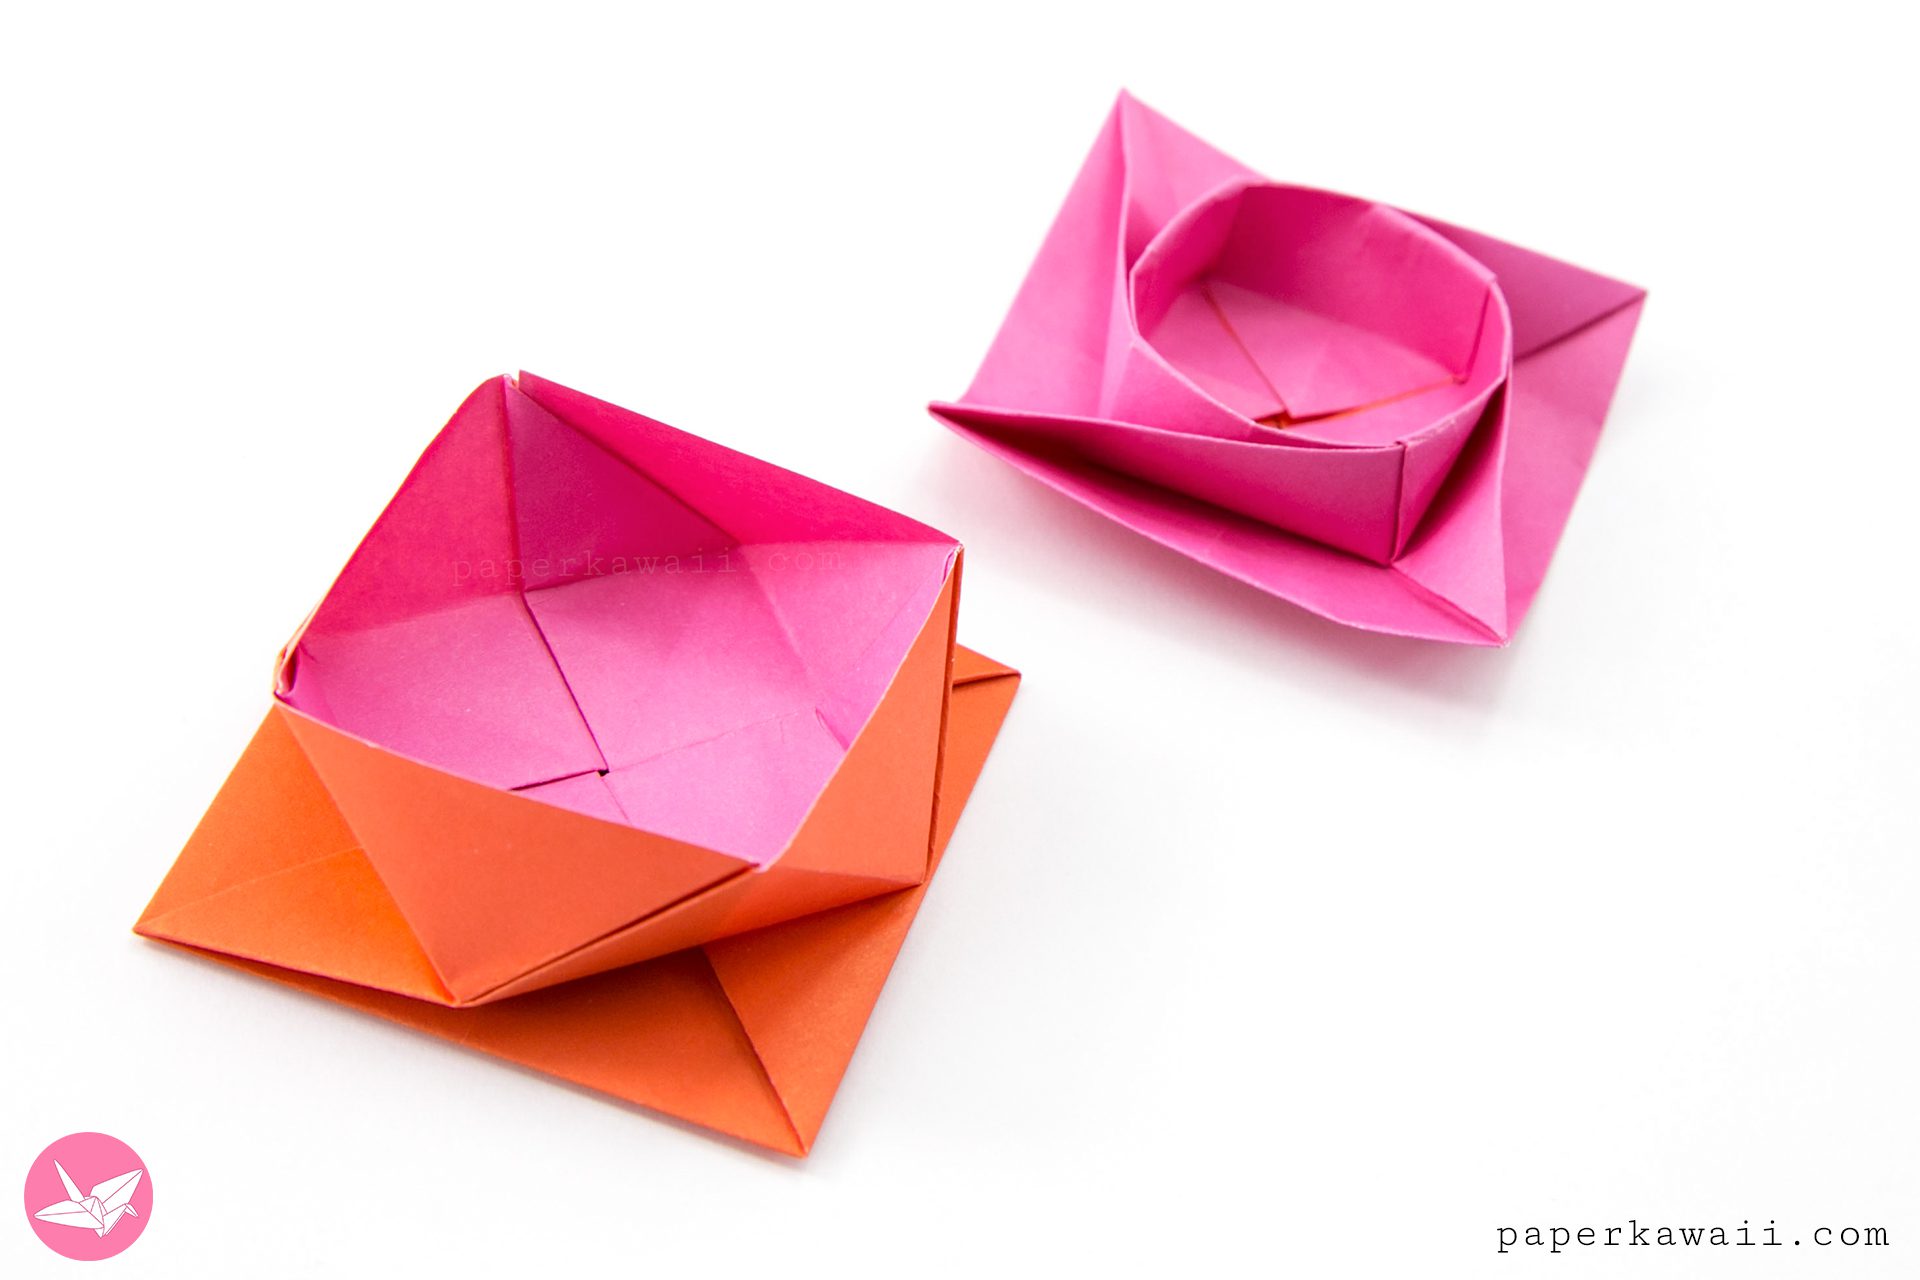 Origami Square Twist Box Paper Kawaii 04